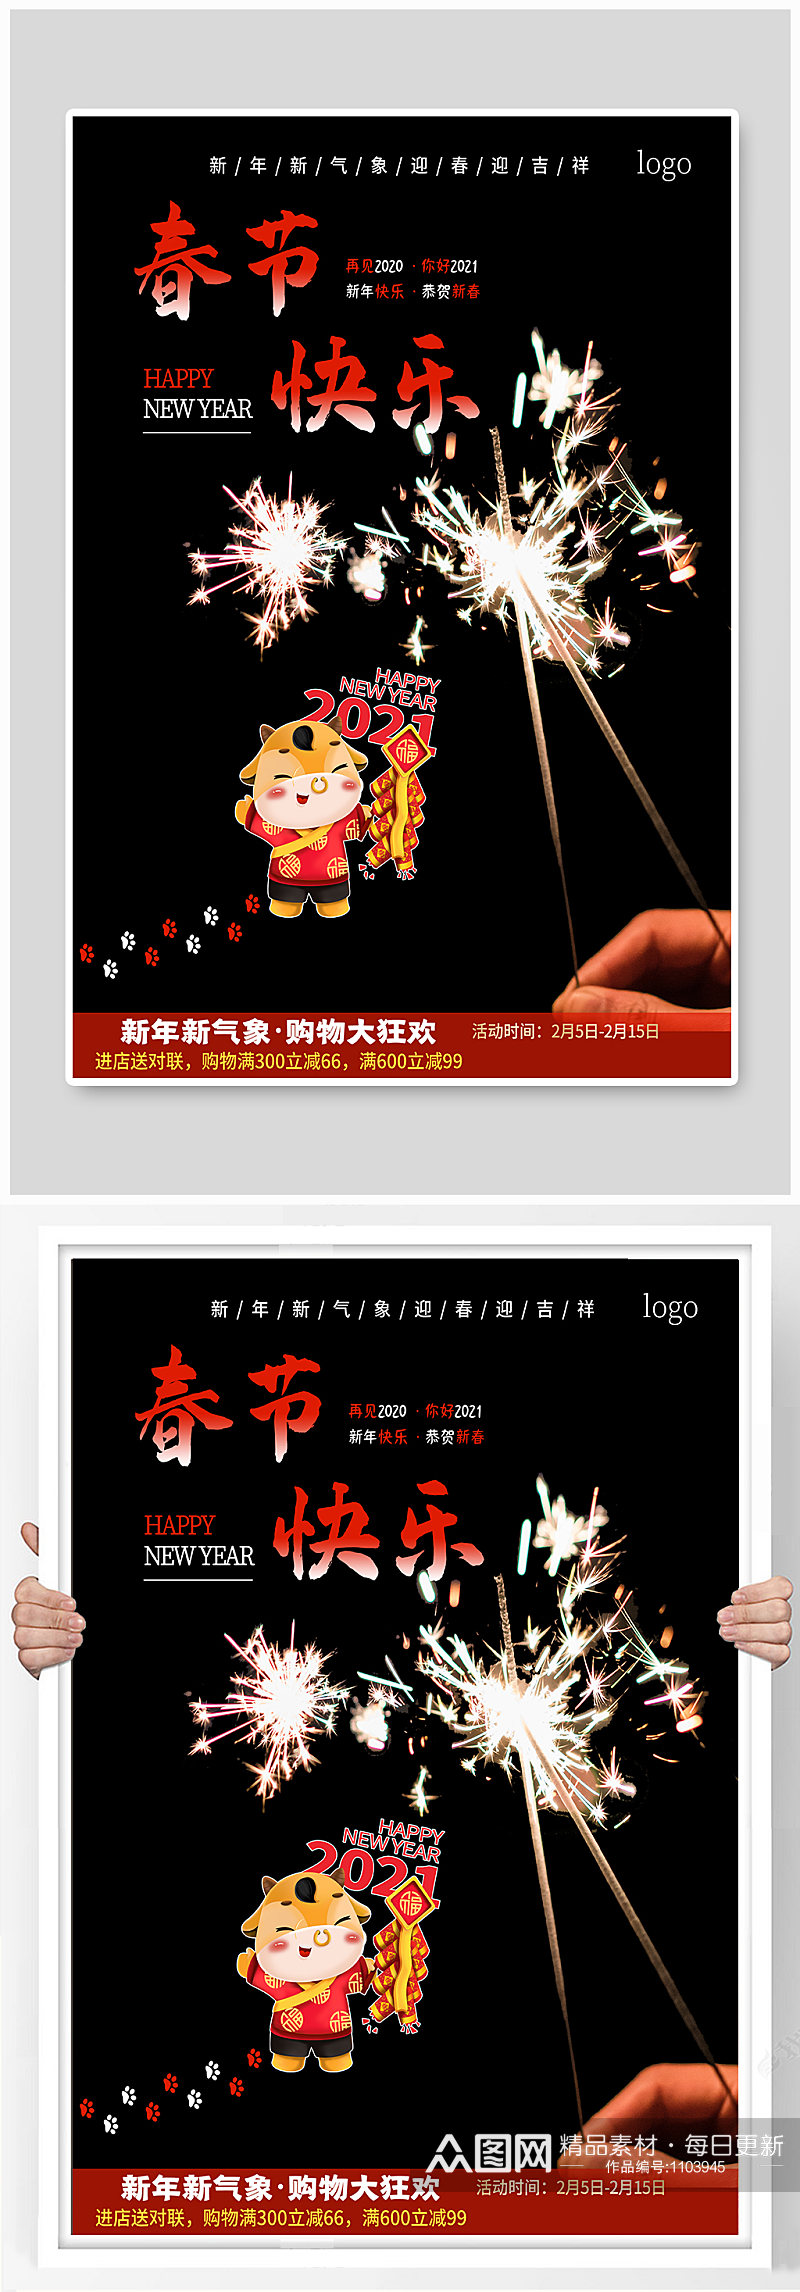 春节快乐新年购物狂欢促销海报素材